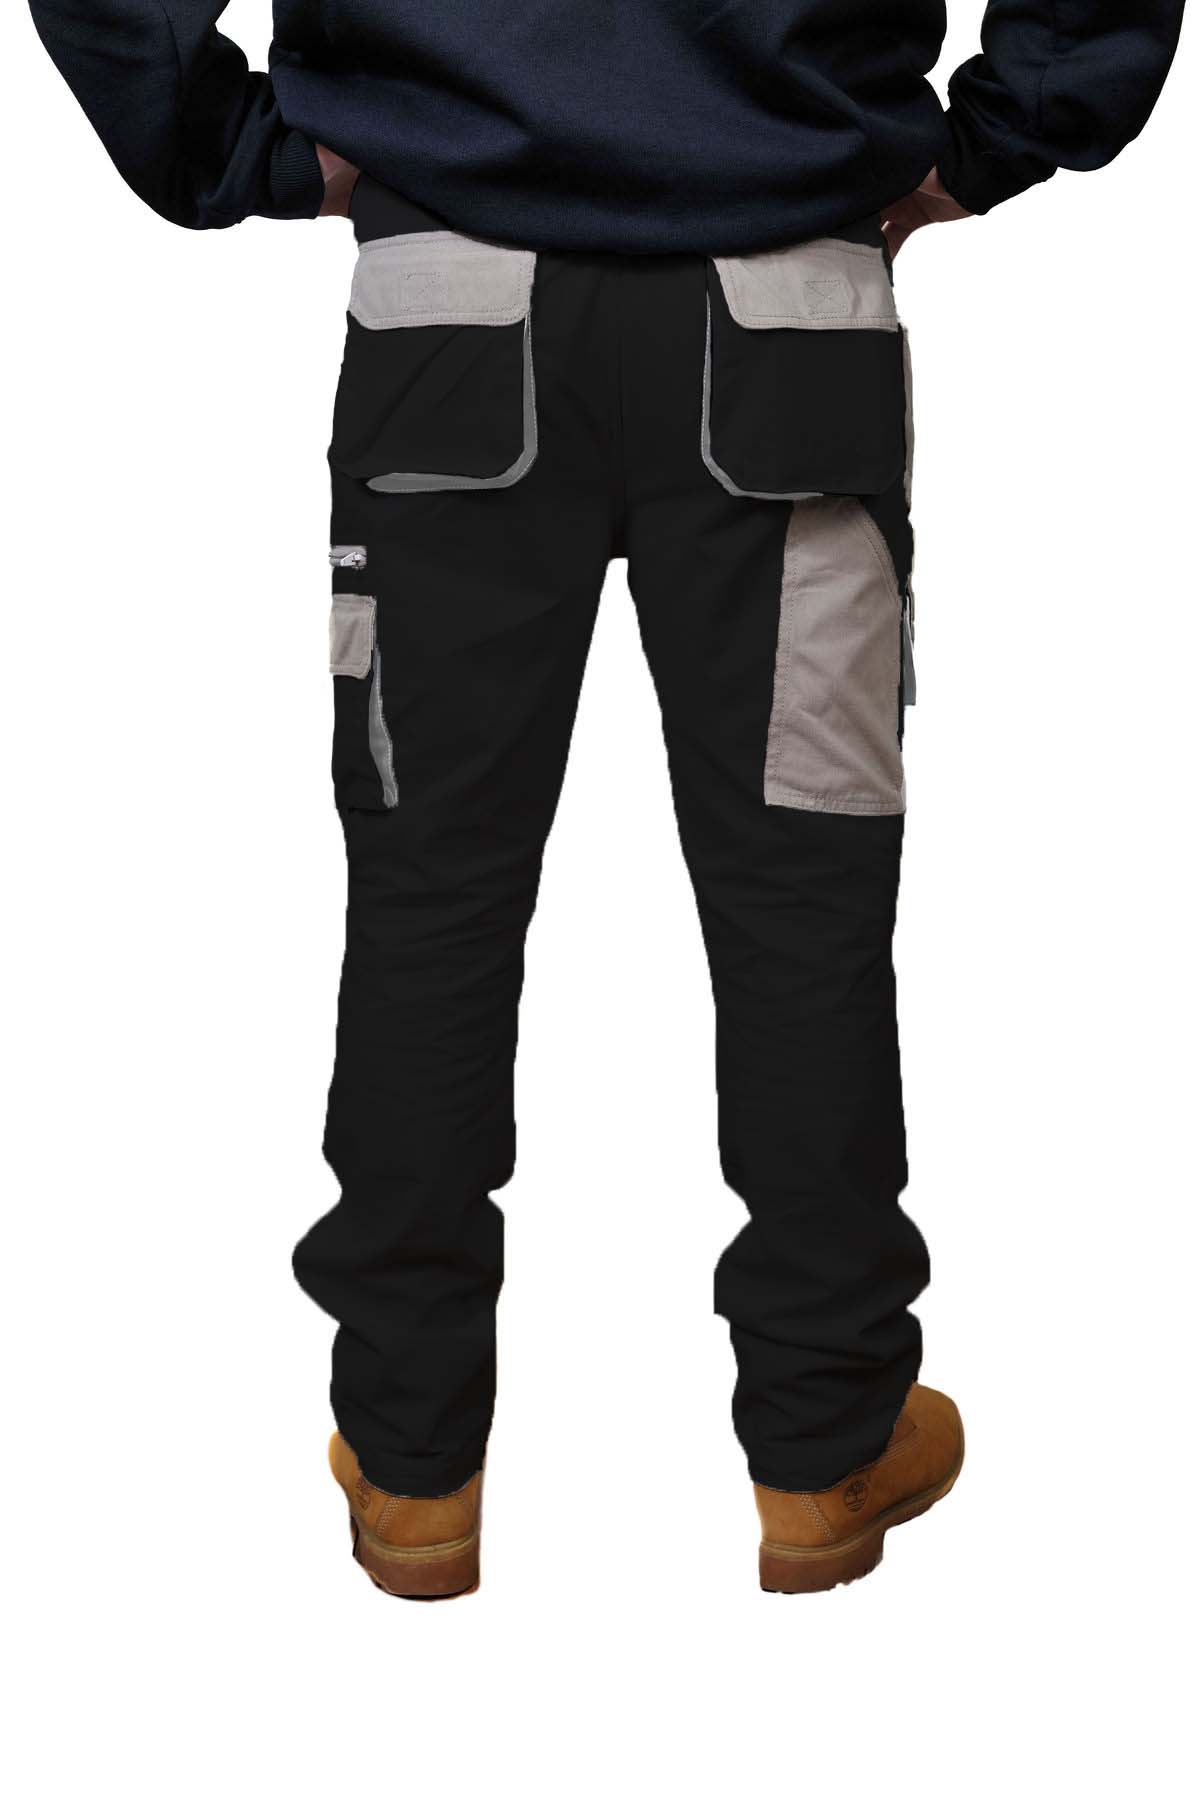 FMG - Black Industry Cargo Trouser